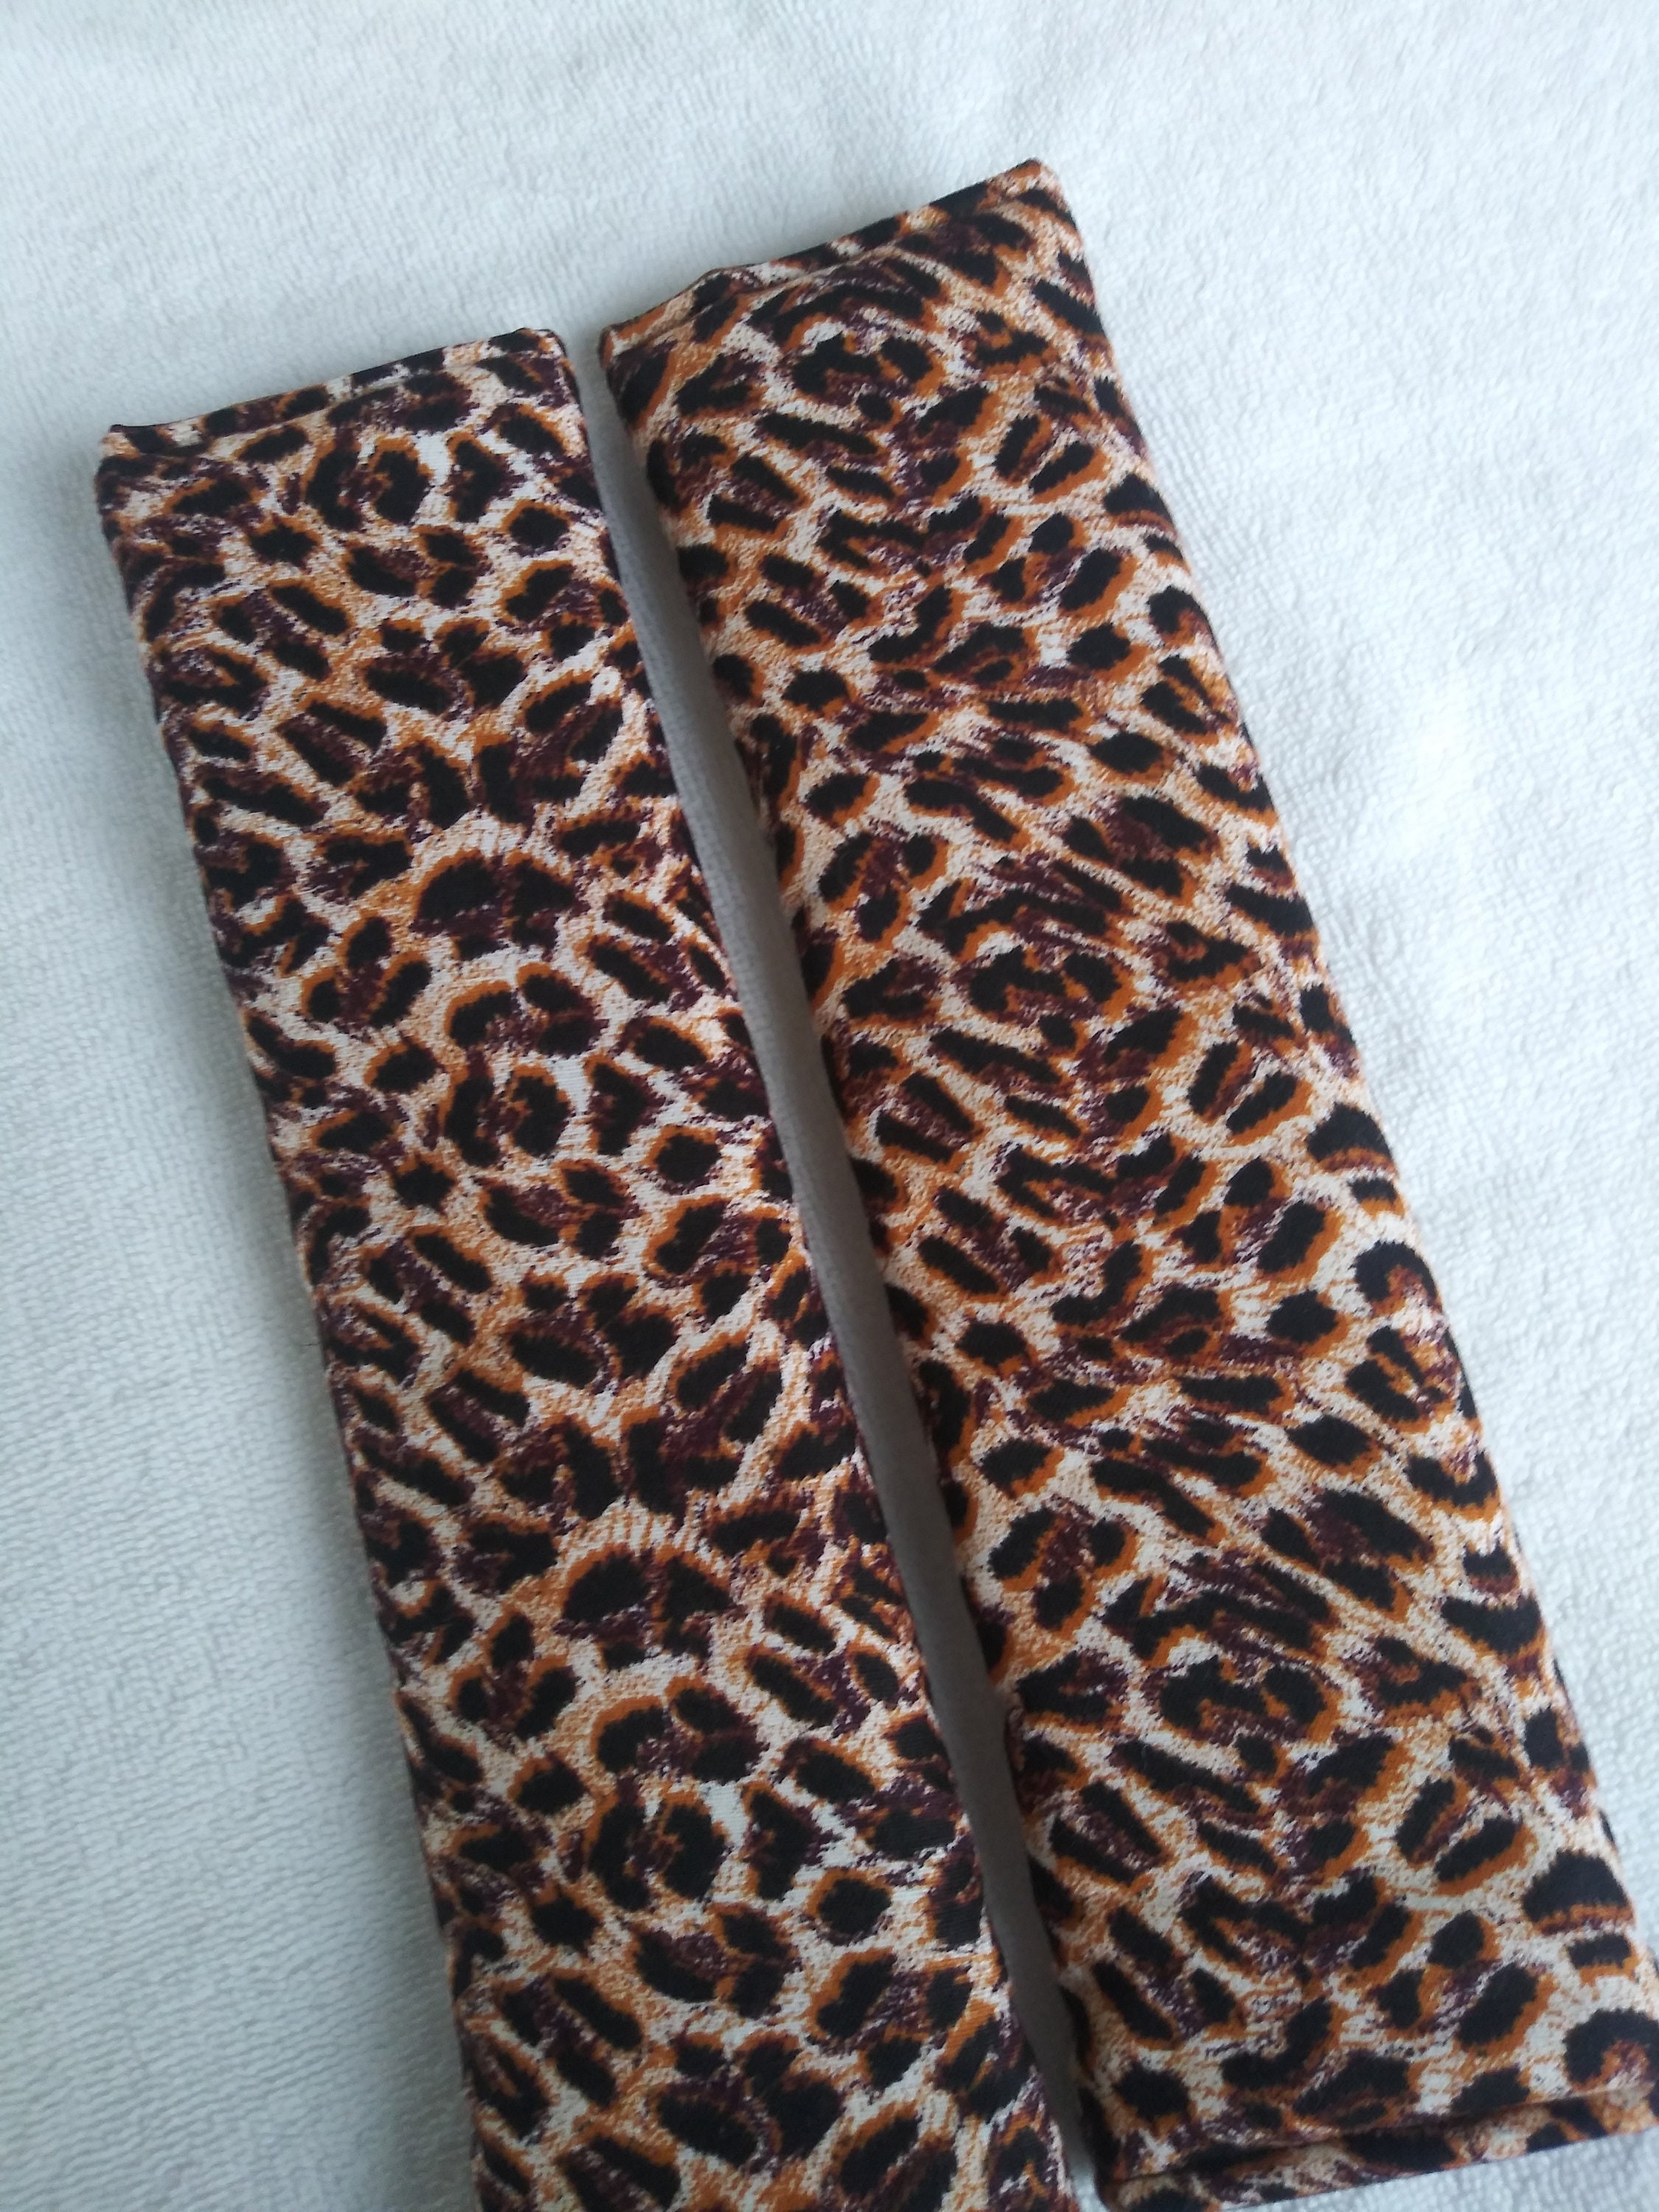 Womens Designer Tool Belt Cheetah Print 